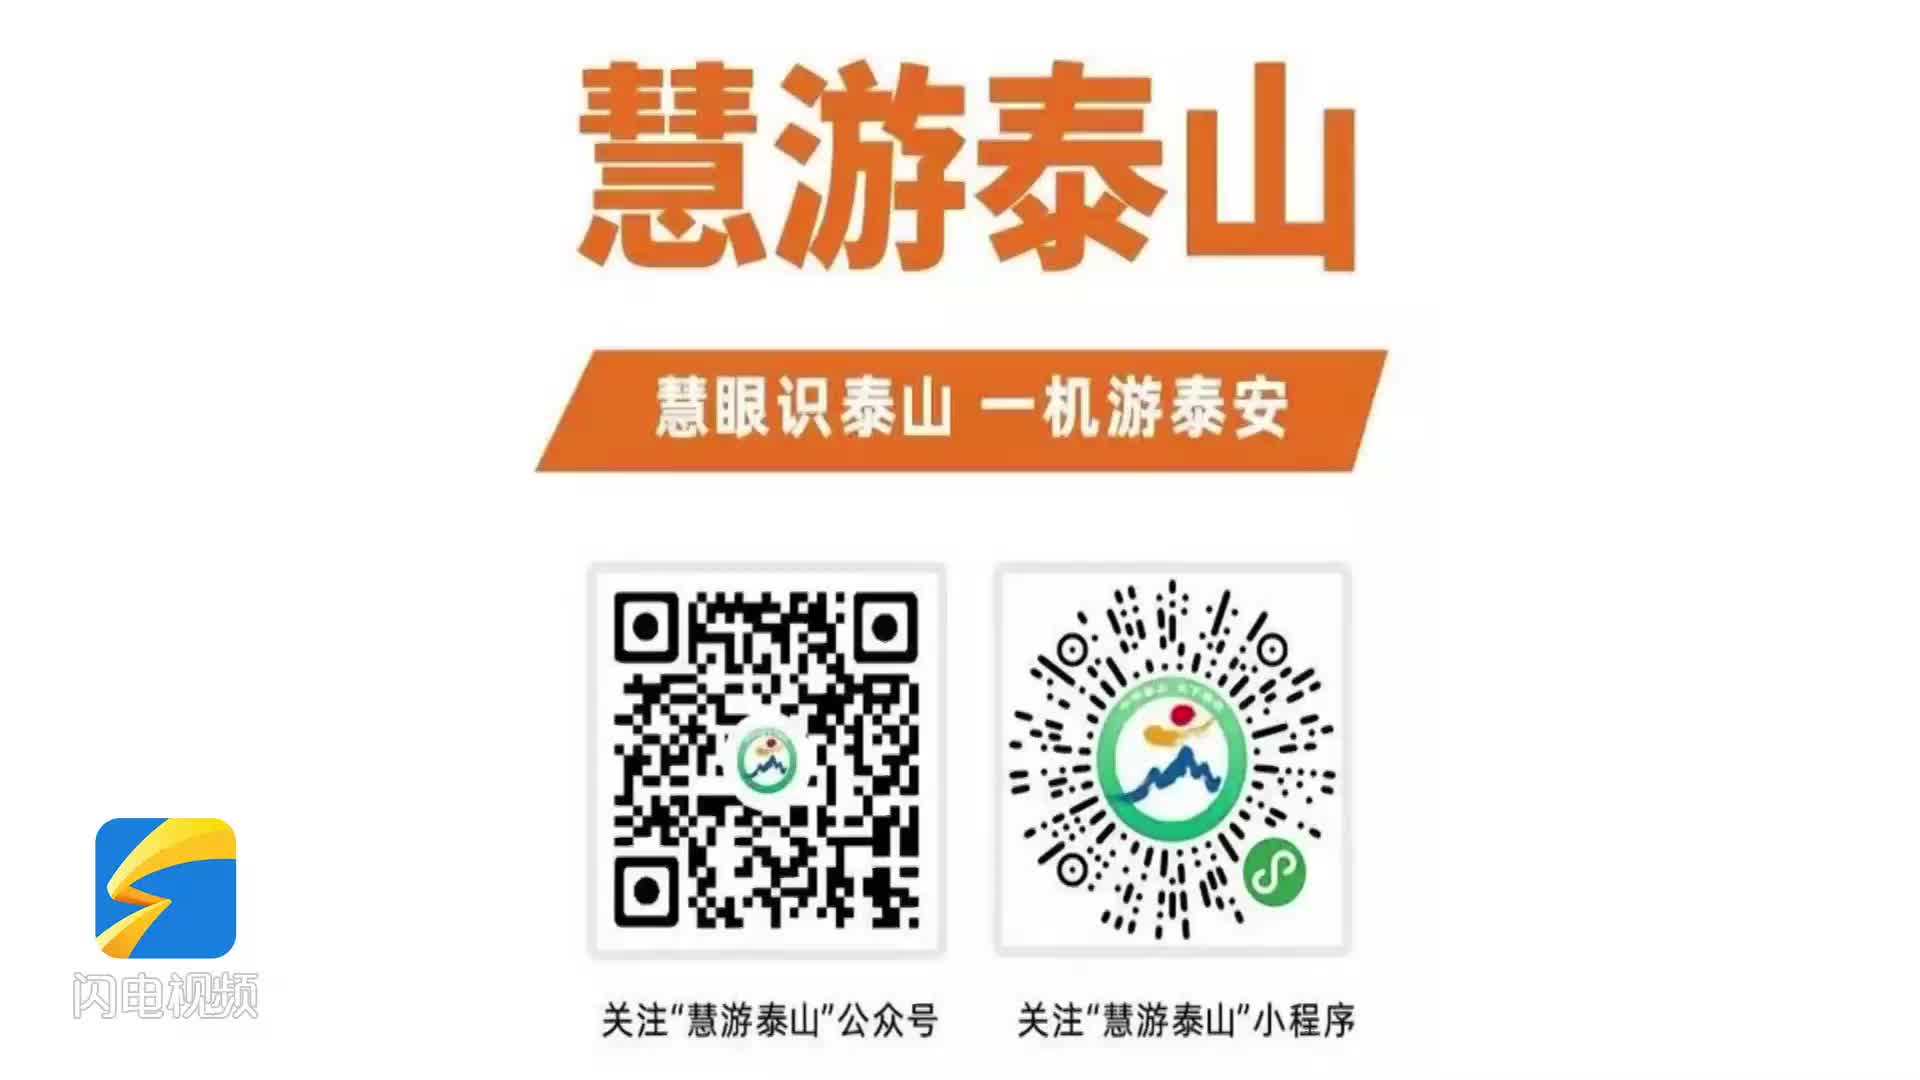 问政追踪丨“慧游泰山”平台启动升级改造 问题订单均已退款